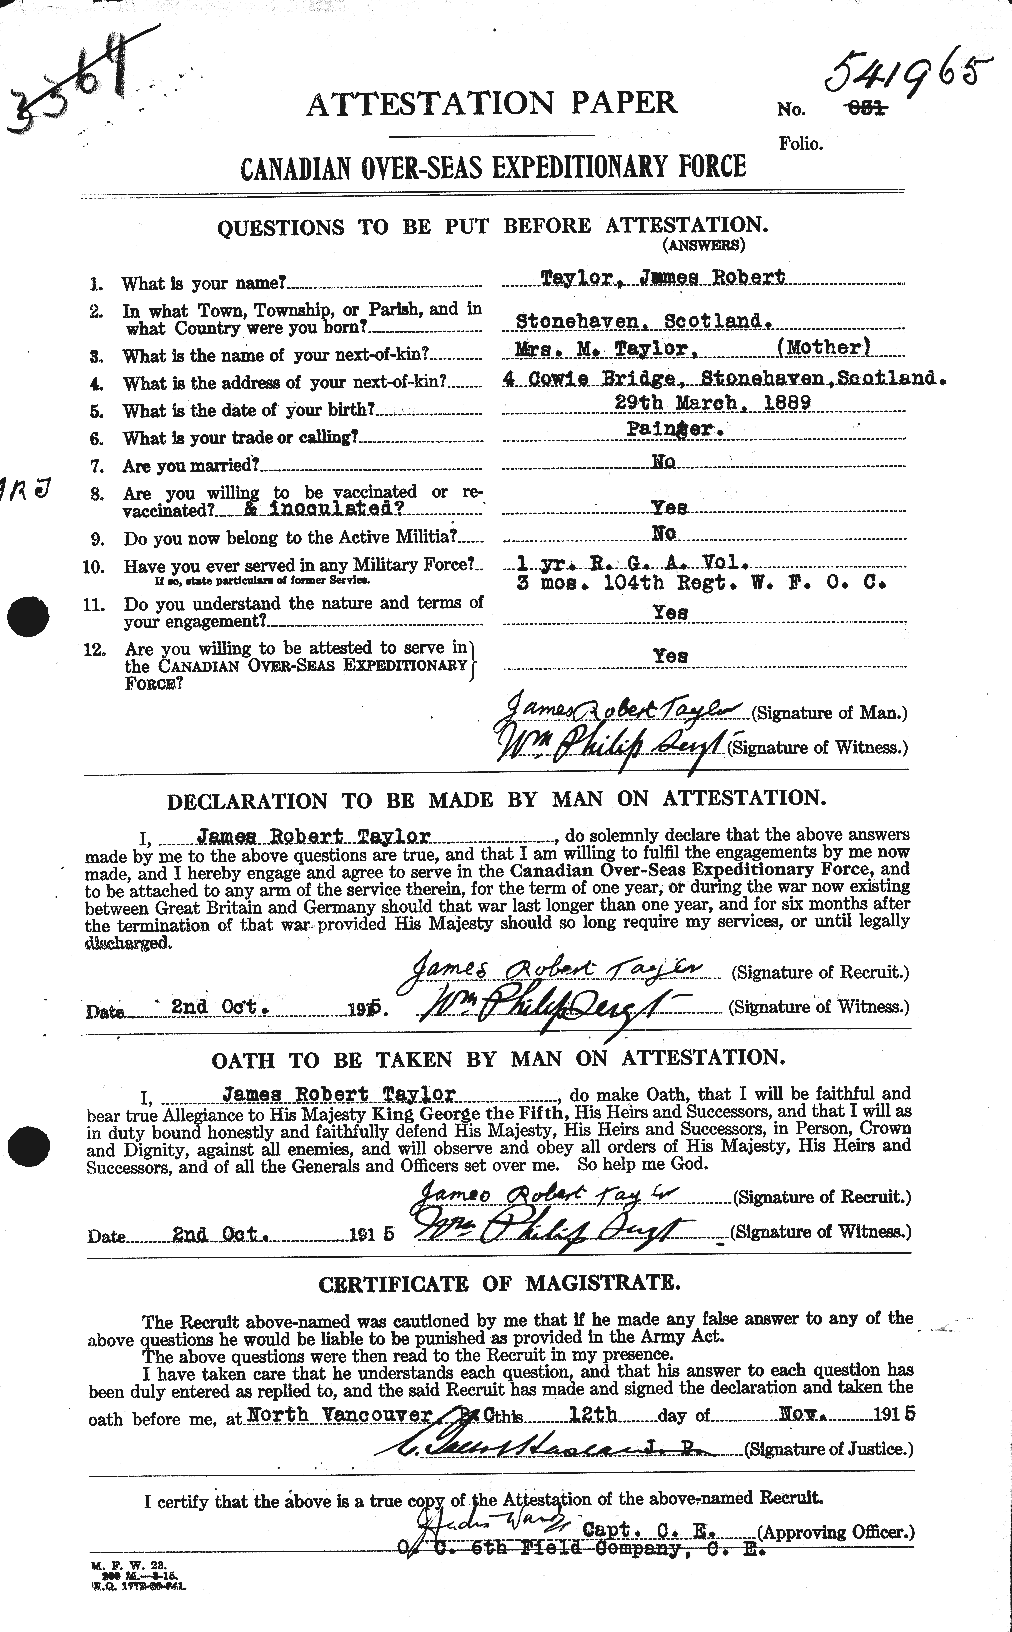 Dossiers du Personnel de la Première Guerre mondiale - CEC 626948a